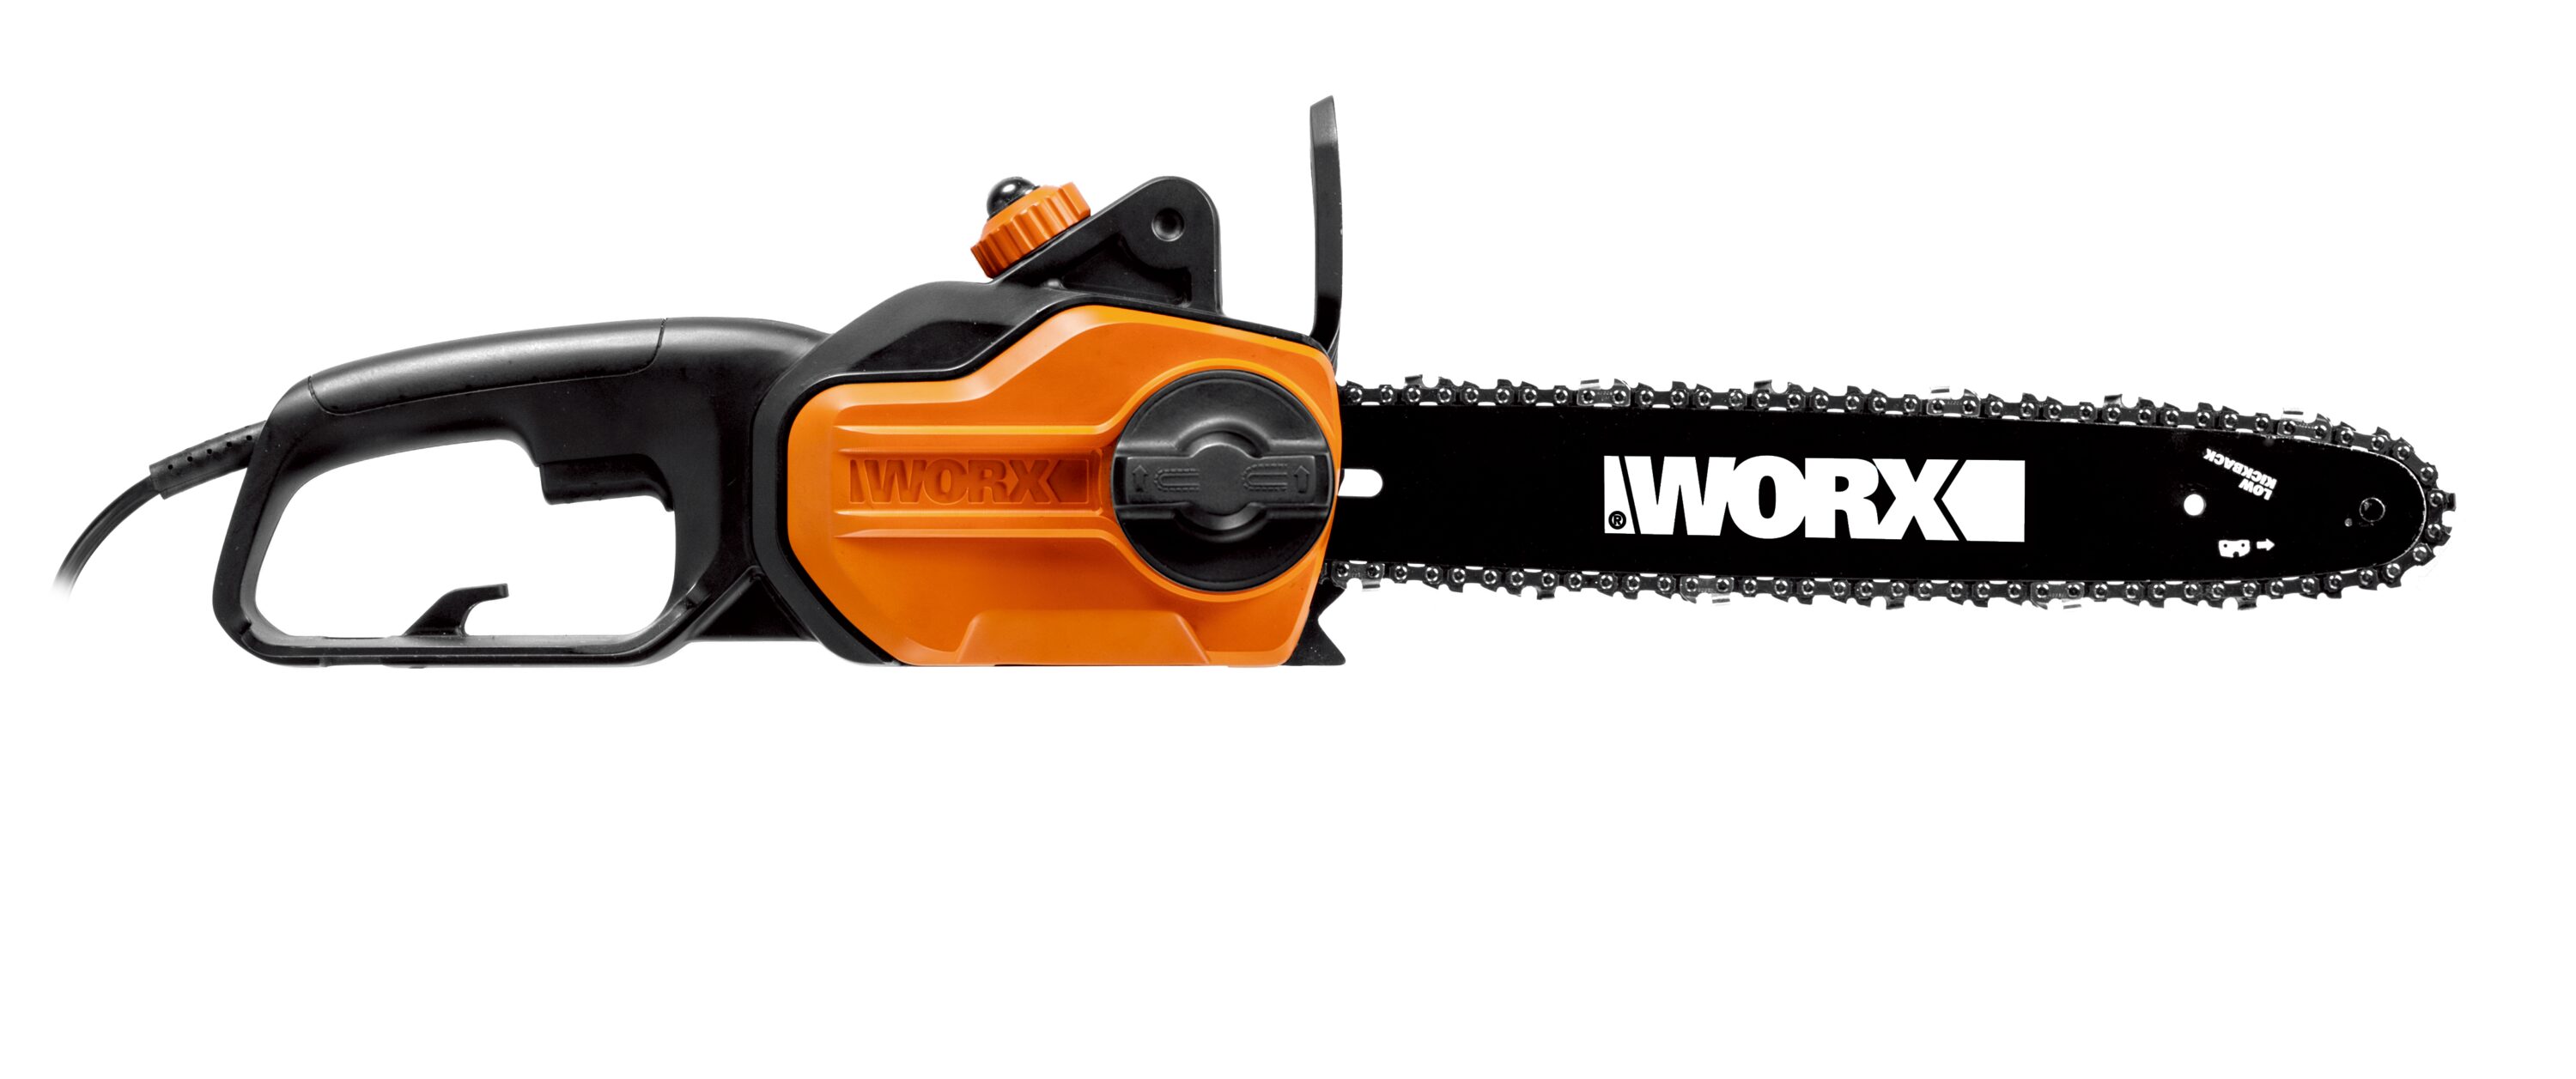 WORX WG305 8 Amp 14 Electric Chainsaw Black WG305 - Best Buy